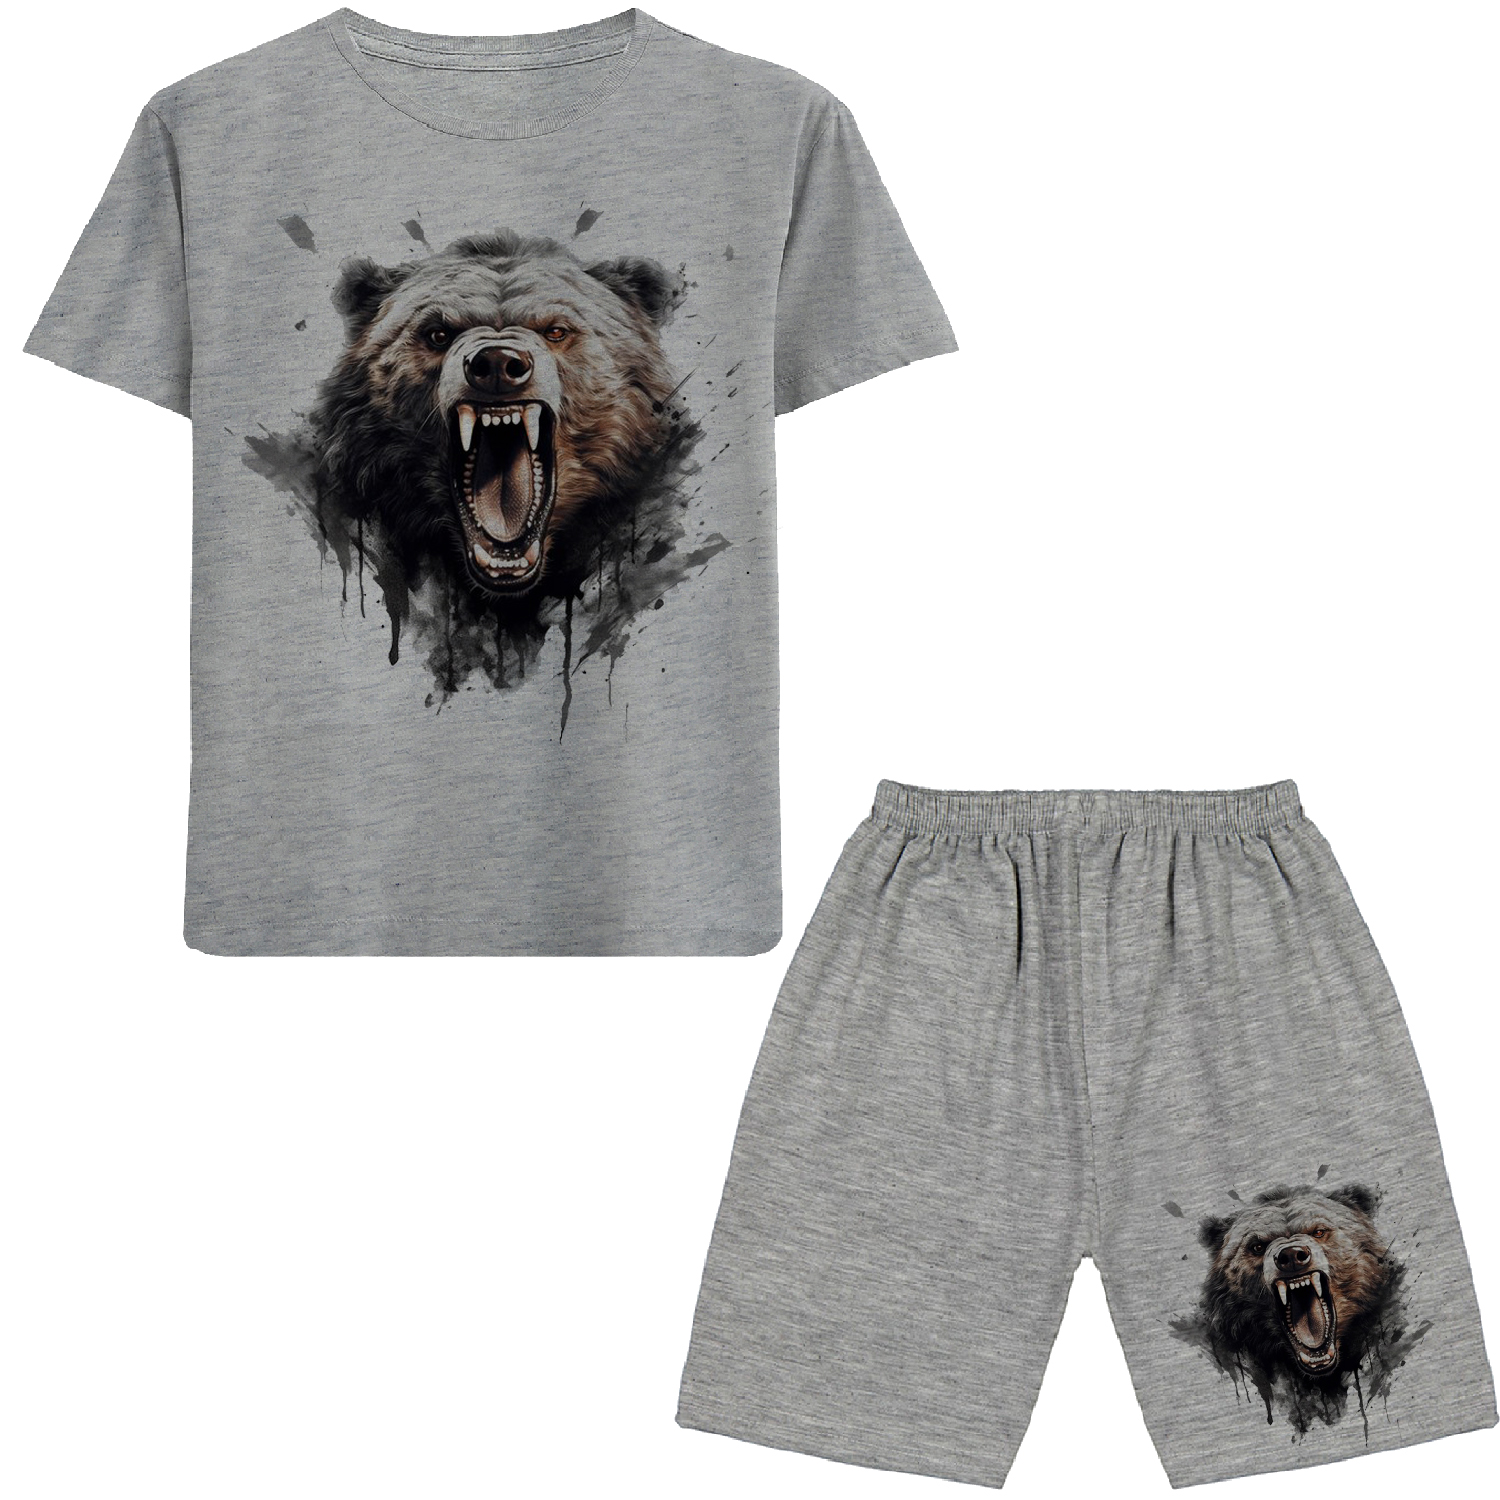 ست تی شرت و شلوارک پسرانه مدل خرس وحشی N201